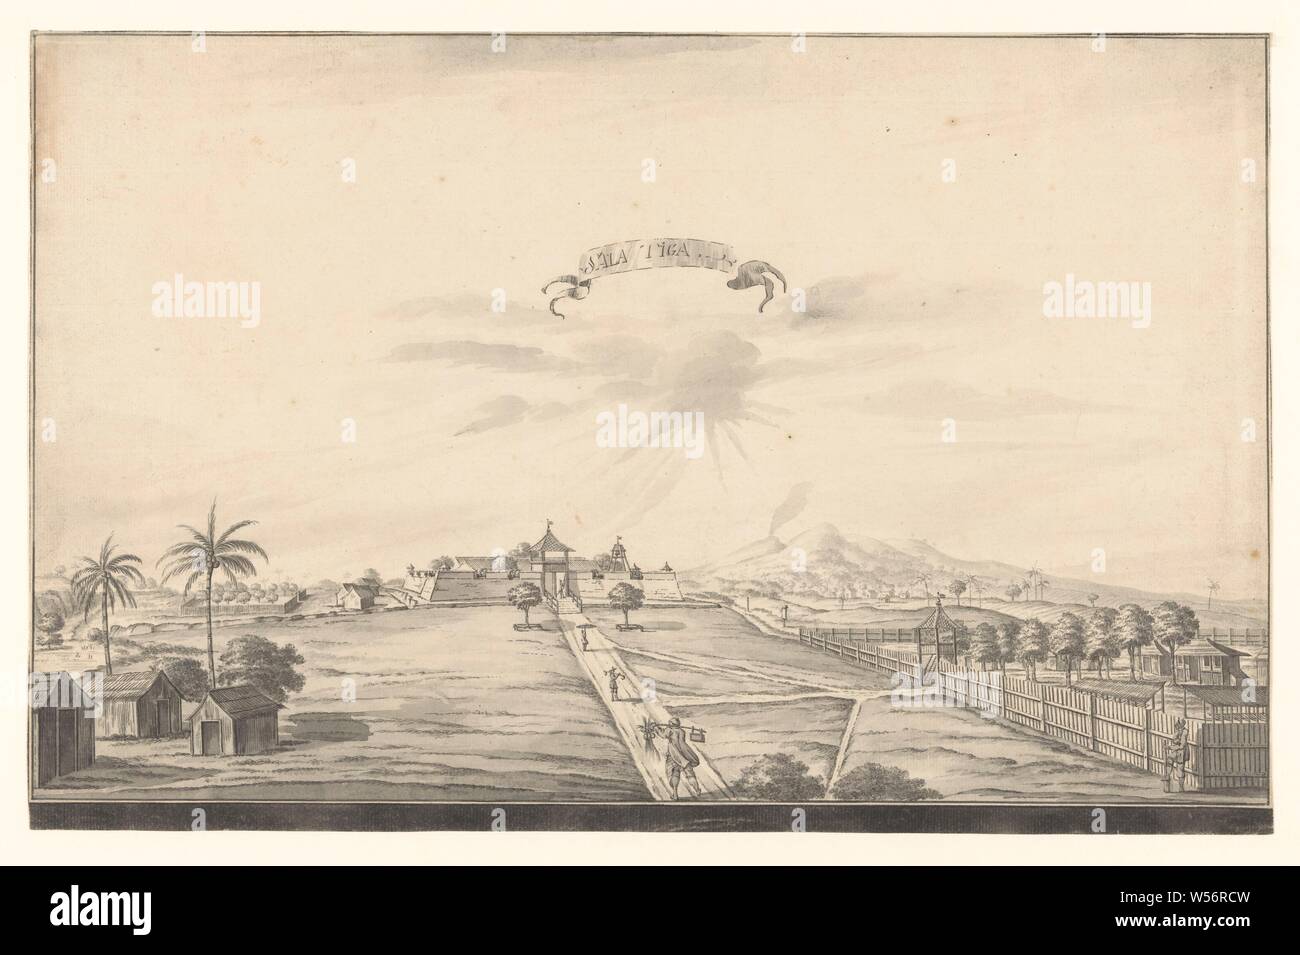 Ansicht der Salatiga fort, Sala Tiga (Titel auf Objekt), Blick auf die VOC-Festung in Salatiga. Weg in die Festung auf dem Land, auf der drei Abbildungen. Auf der linken Seite drei Hütten, auf der rechten umzäunten Grundstück und Landwirt lehnte sich auf Schaufel. Hügel im Hintergrund, Festung, Java, Salatiga, Dutch East India Company, A. de Nelly (möglicherweise), 1762-1783, Papier, Tinte, Bürste, H 312 mm x B 485 mm Stockfoto